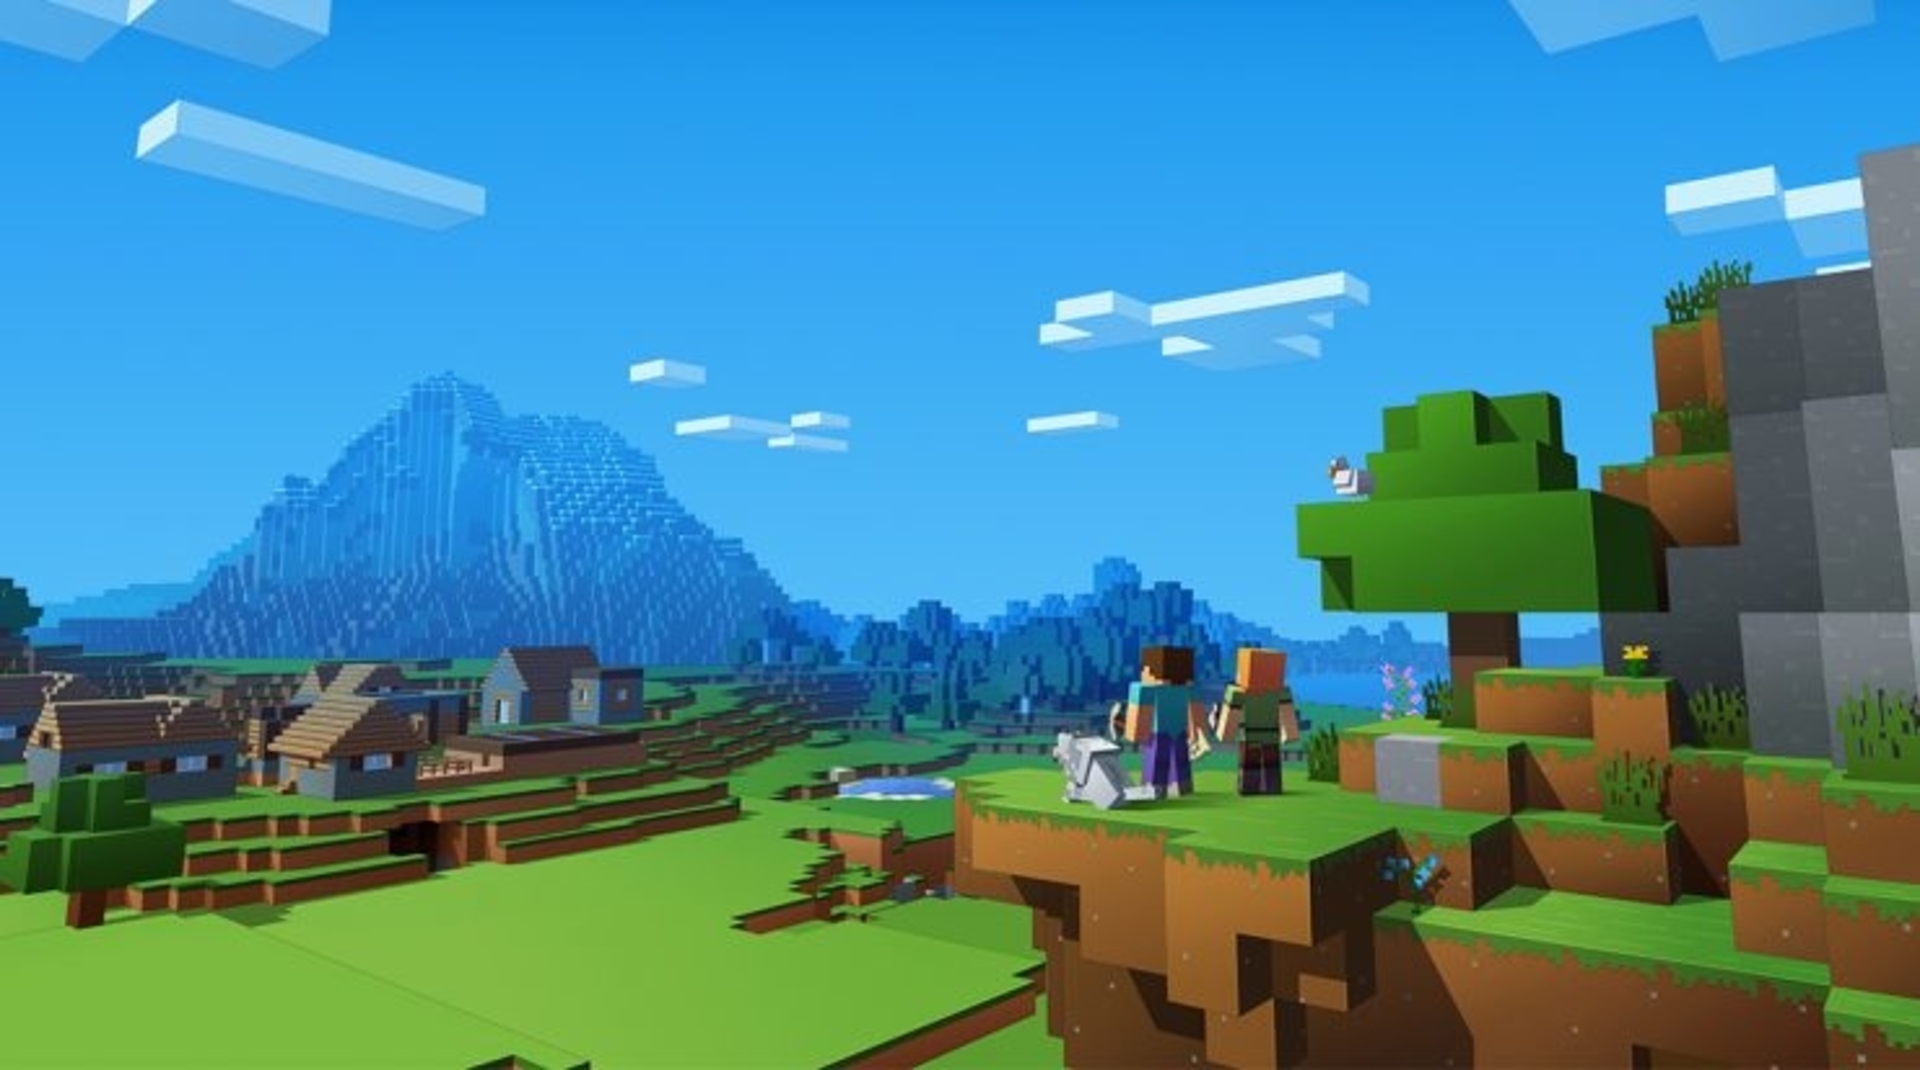 Minecraft официально больше, чем Fortnite, Roblox и GTA V